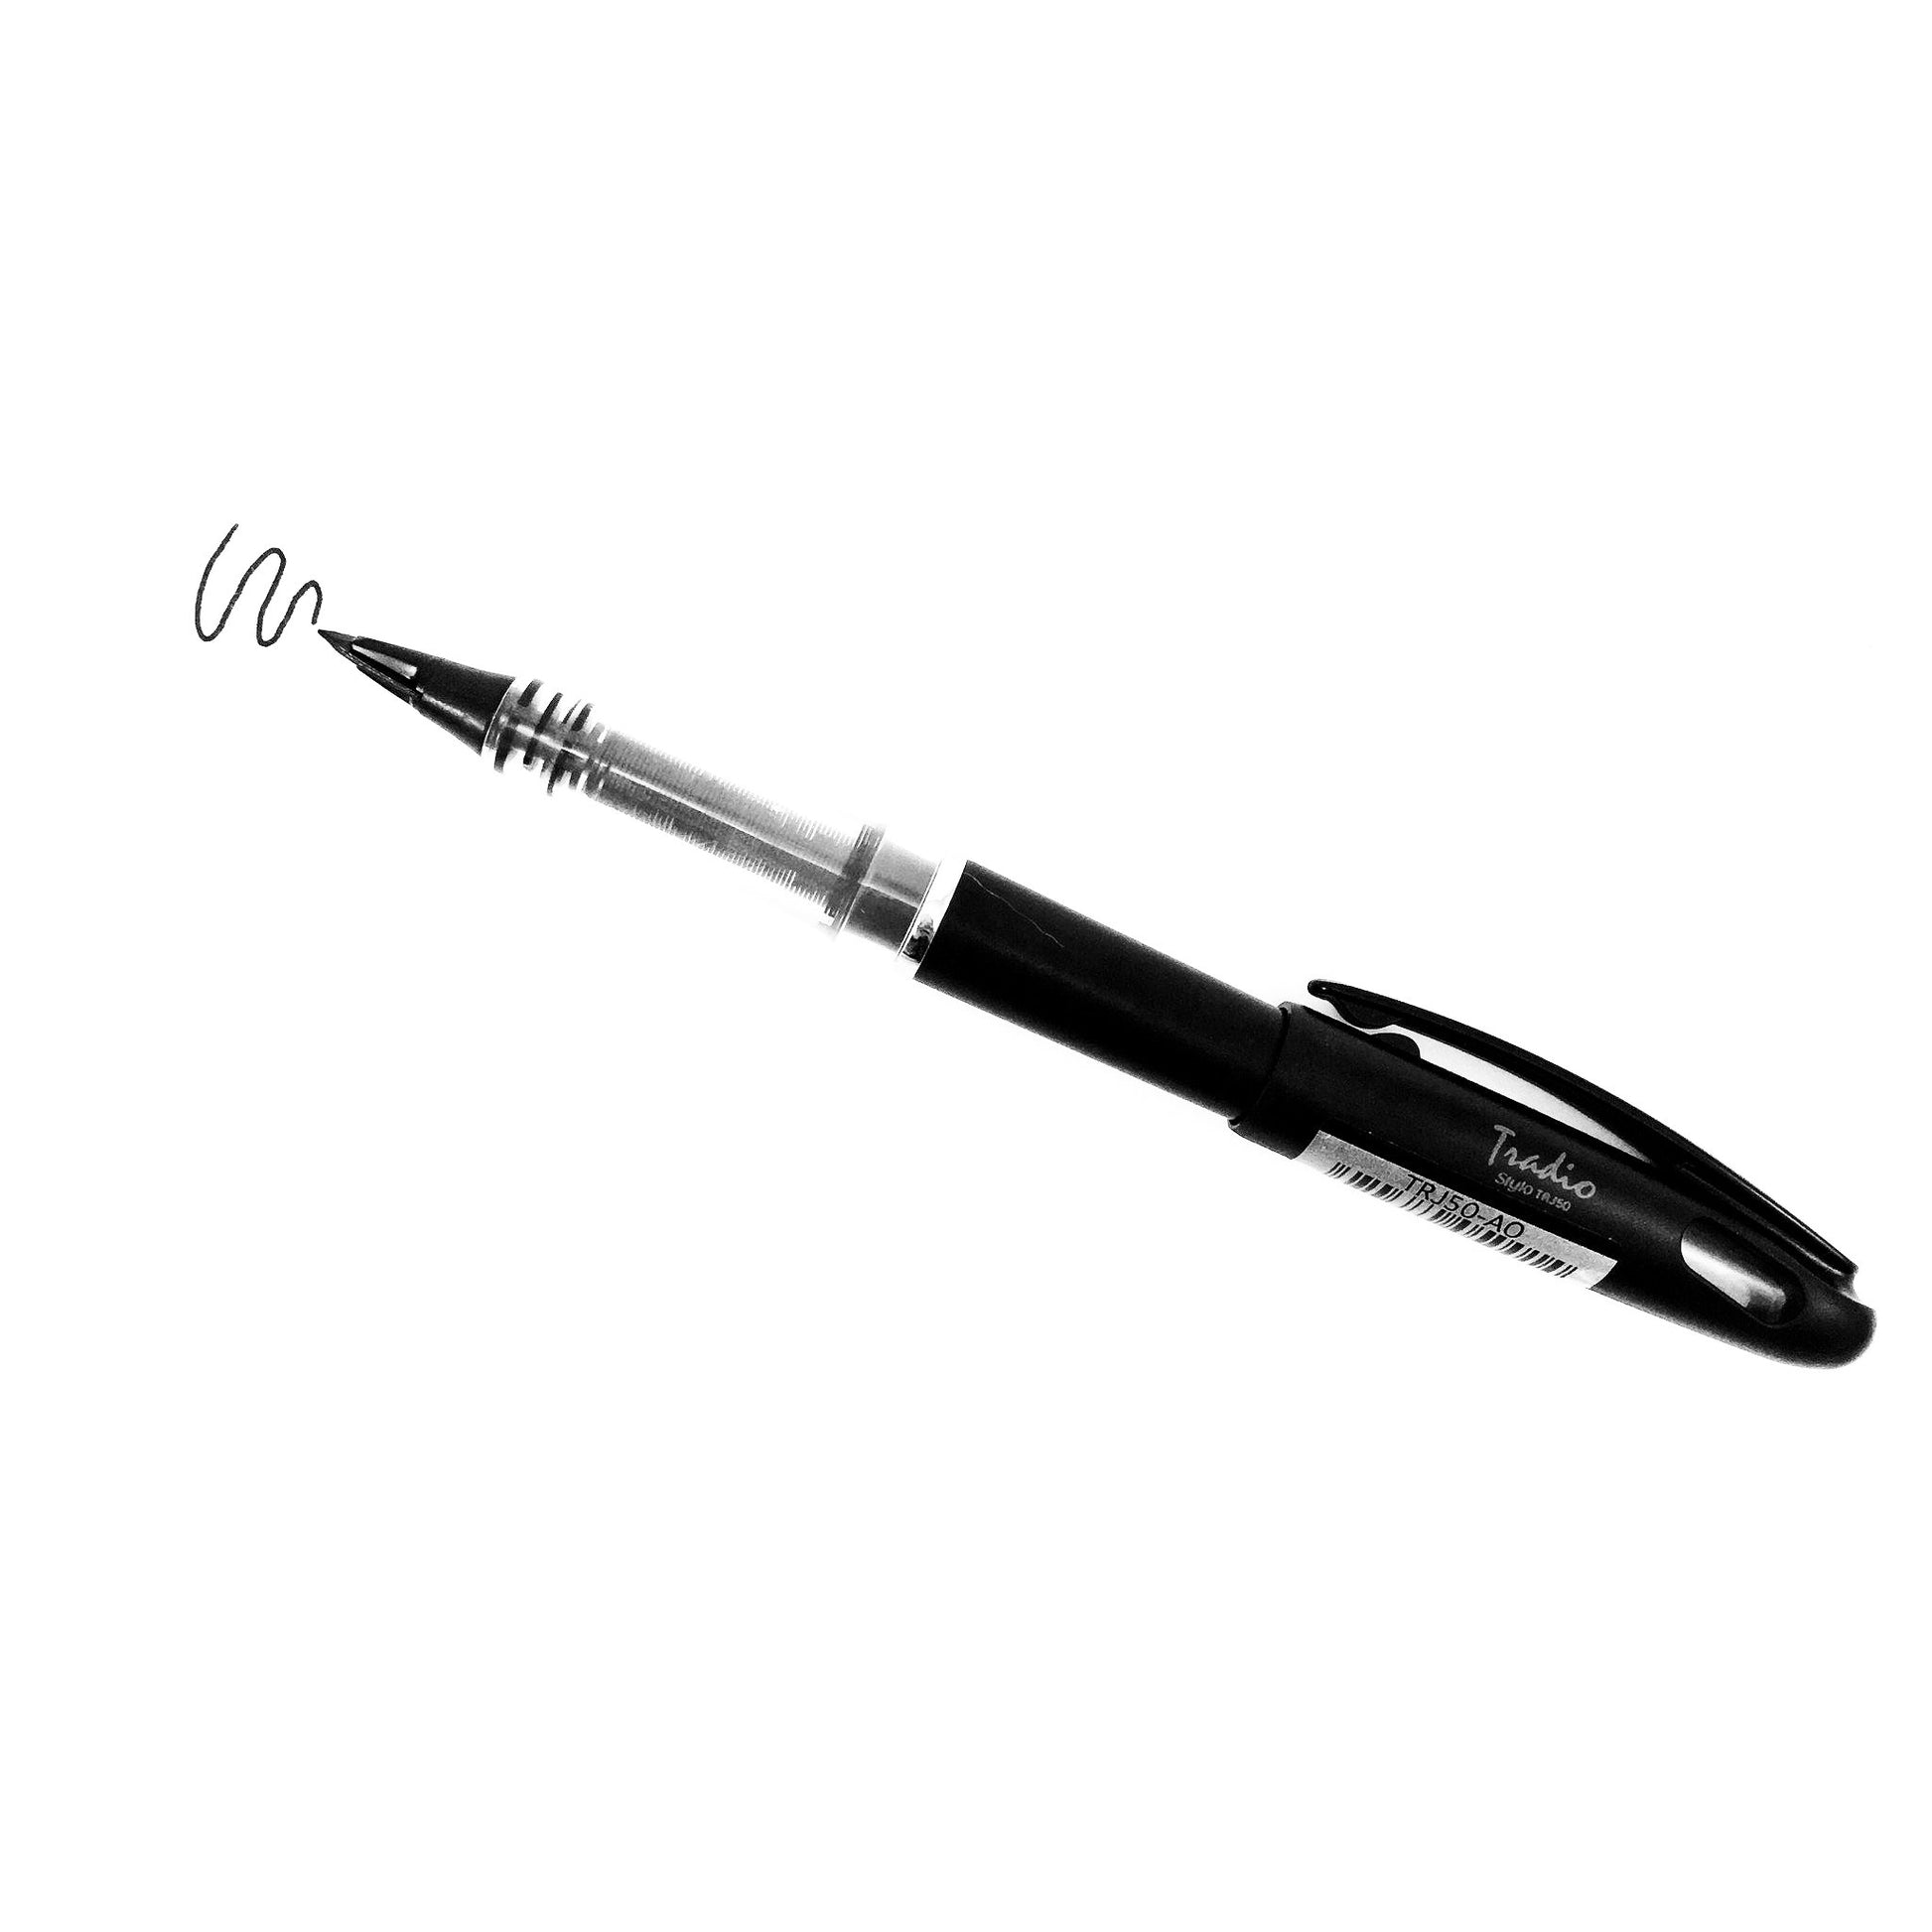 Pentel Tradio Stylo Sketch Pen - by K. A. Artist Shop - K. A. Artist Shop